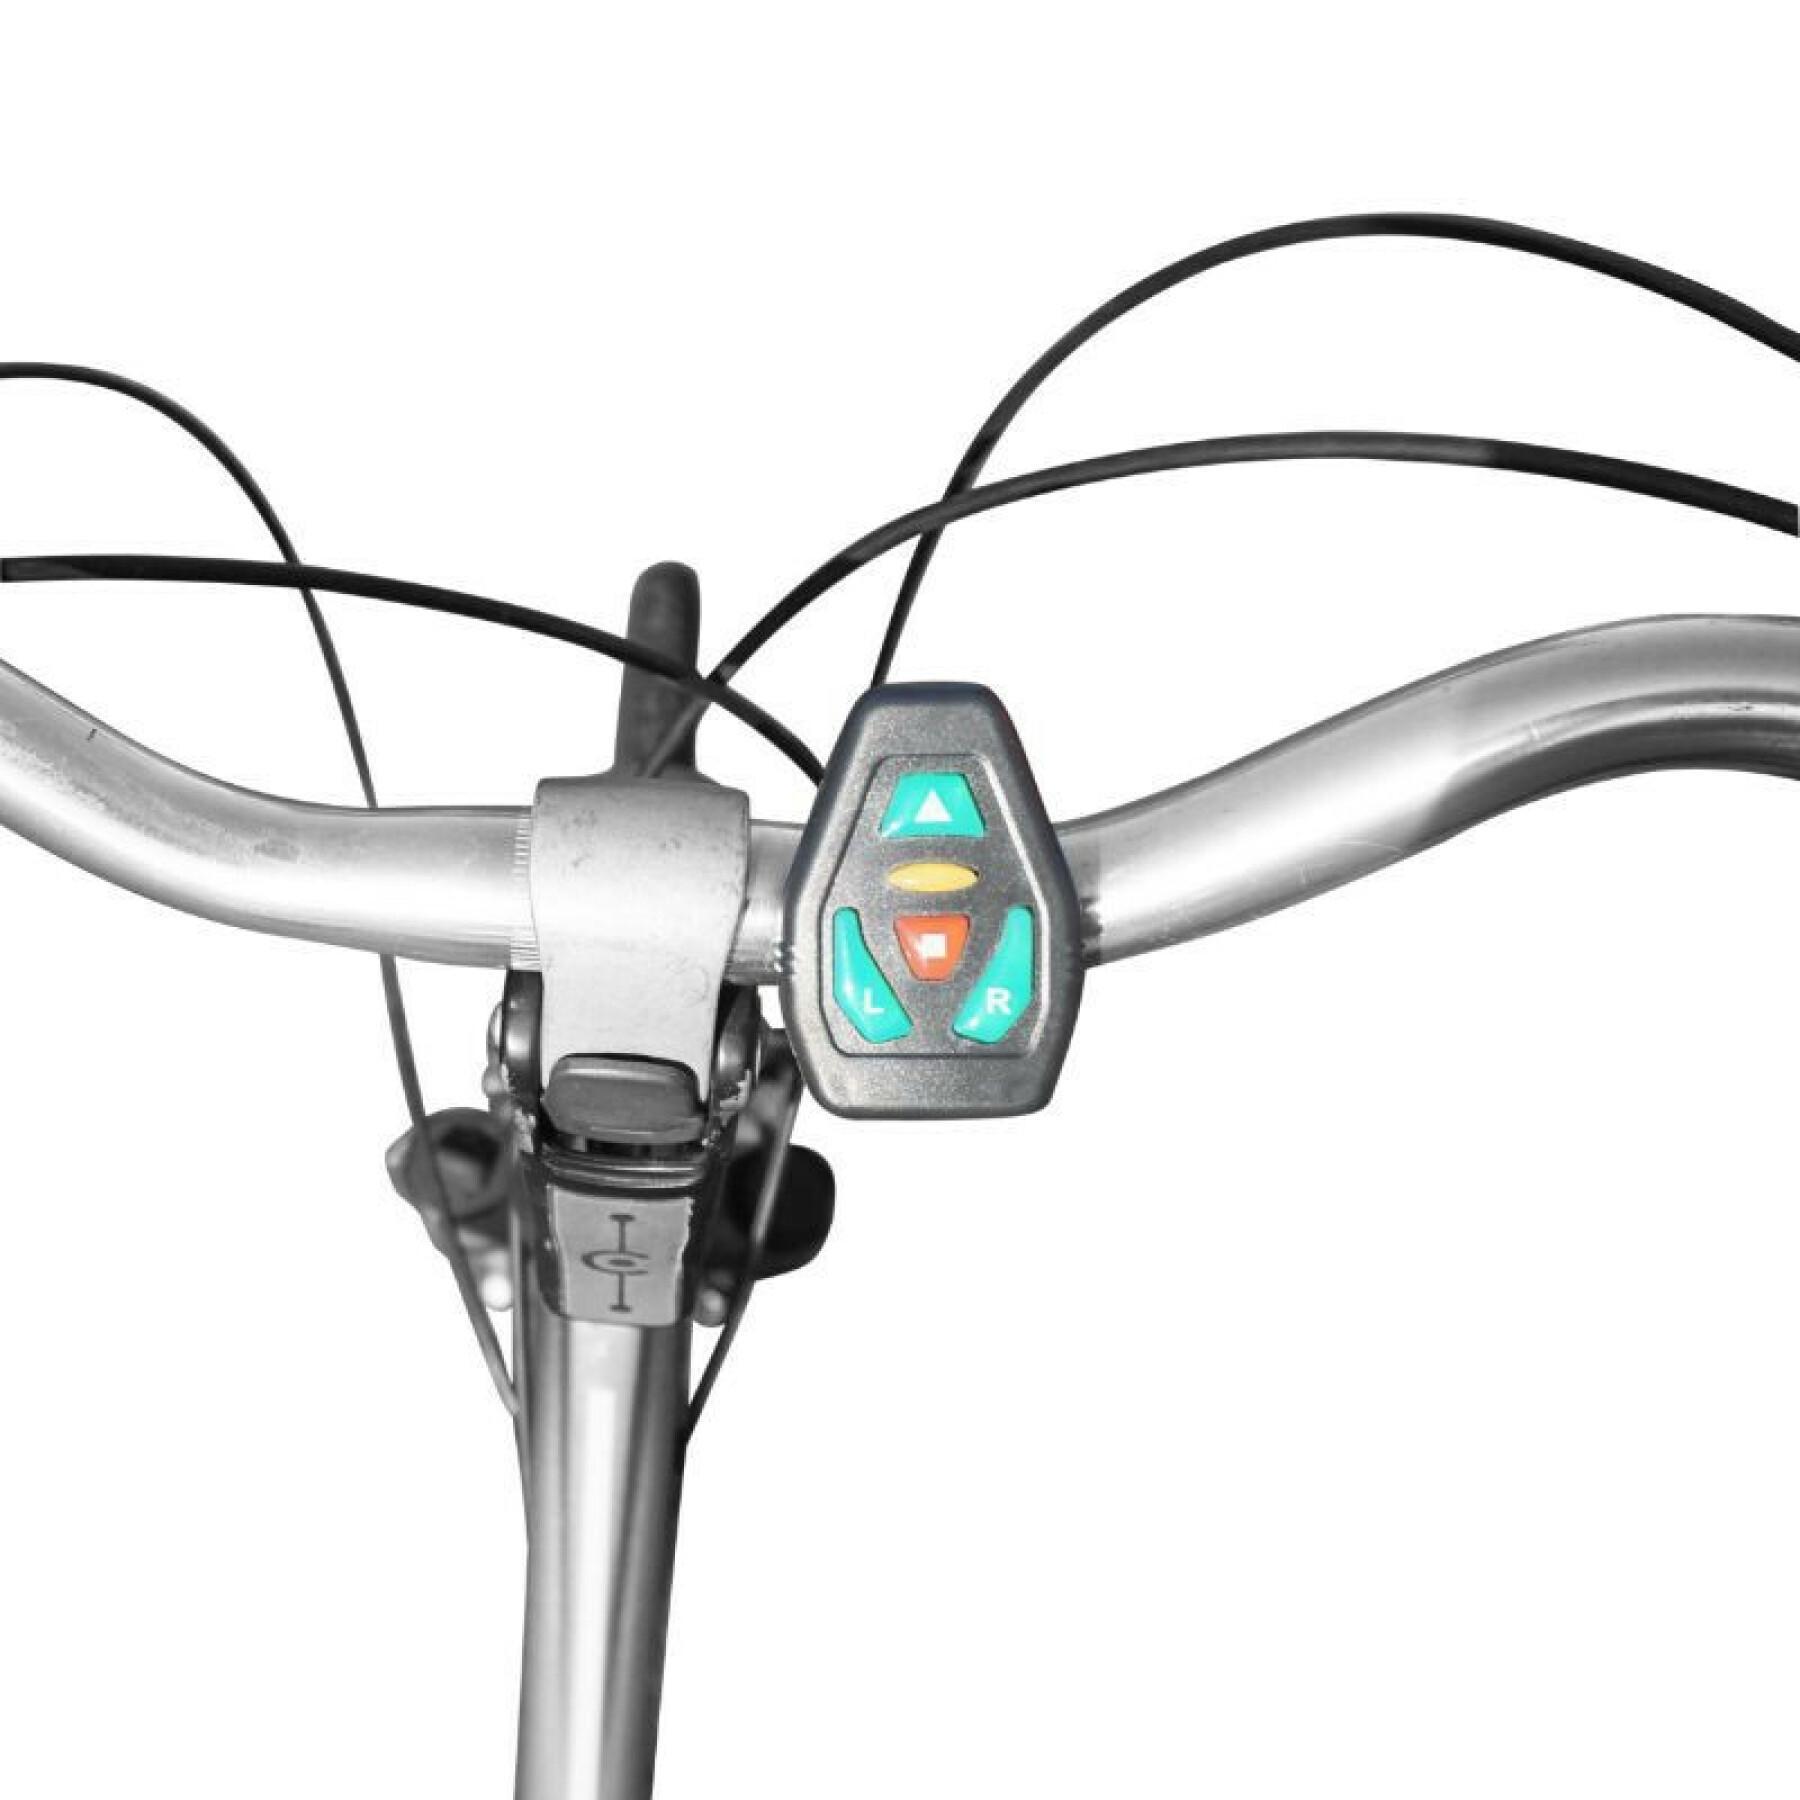 Éclairage corporel-harnais avec signalisation integrée 48 leds - telécommande cintre sans fil indicateur de direction rechargeable USB (sur gilet-veste) vélo - trottinette P2R